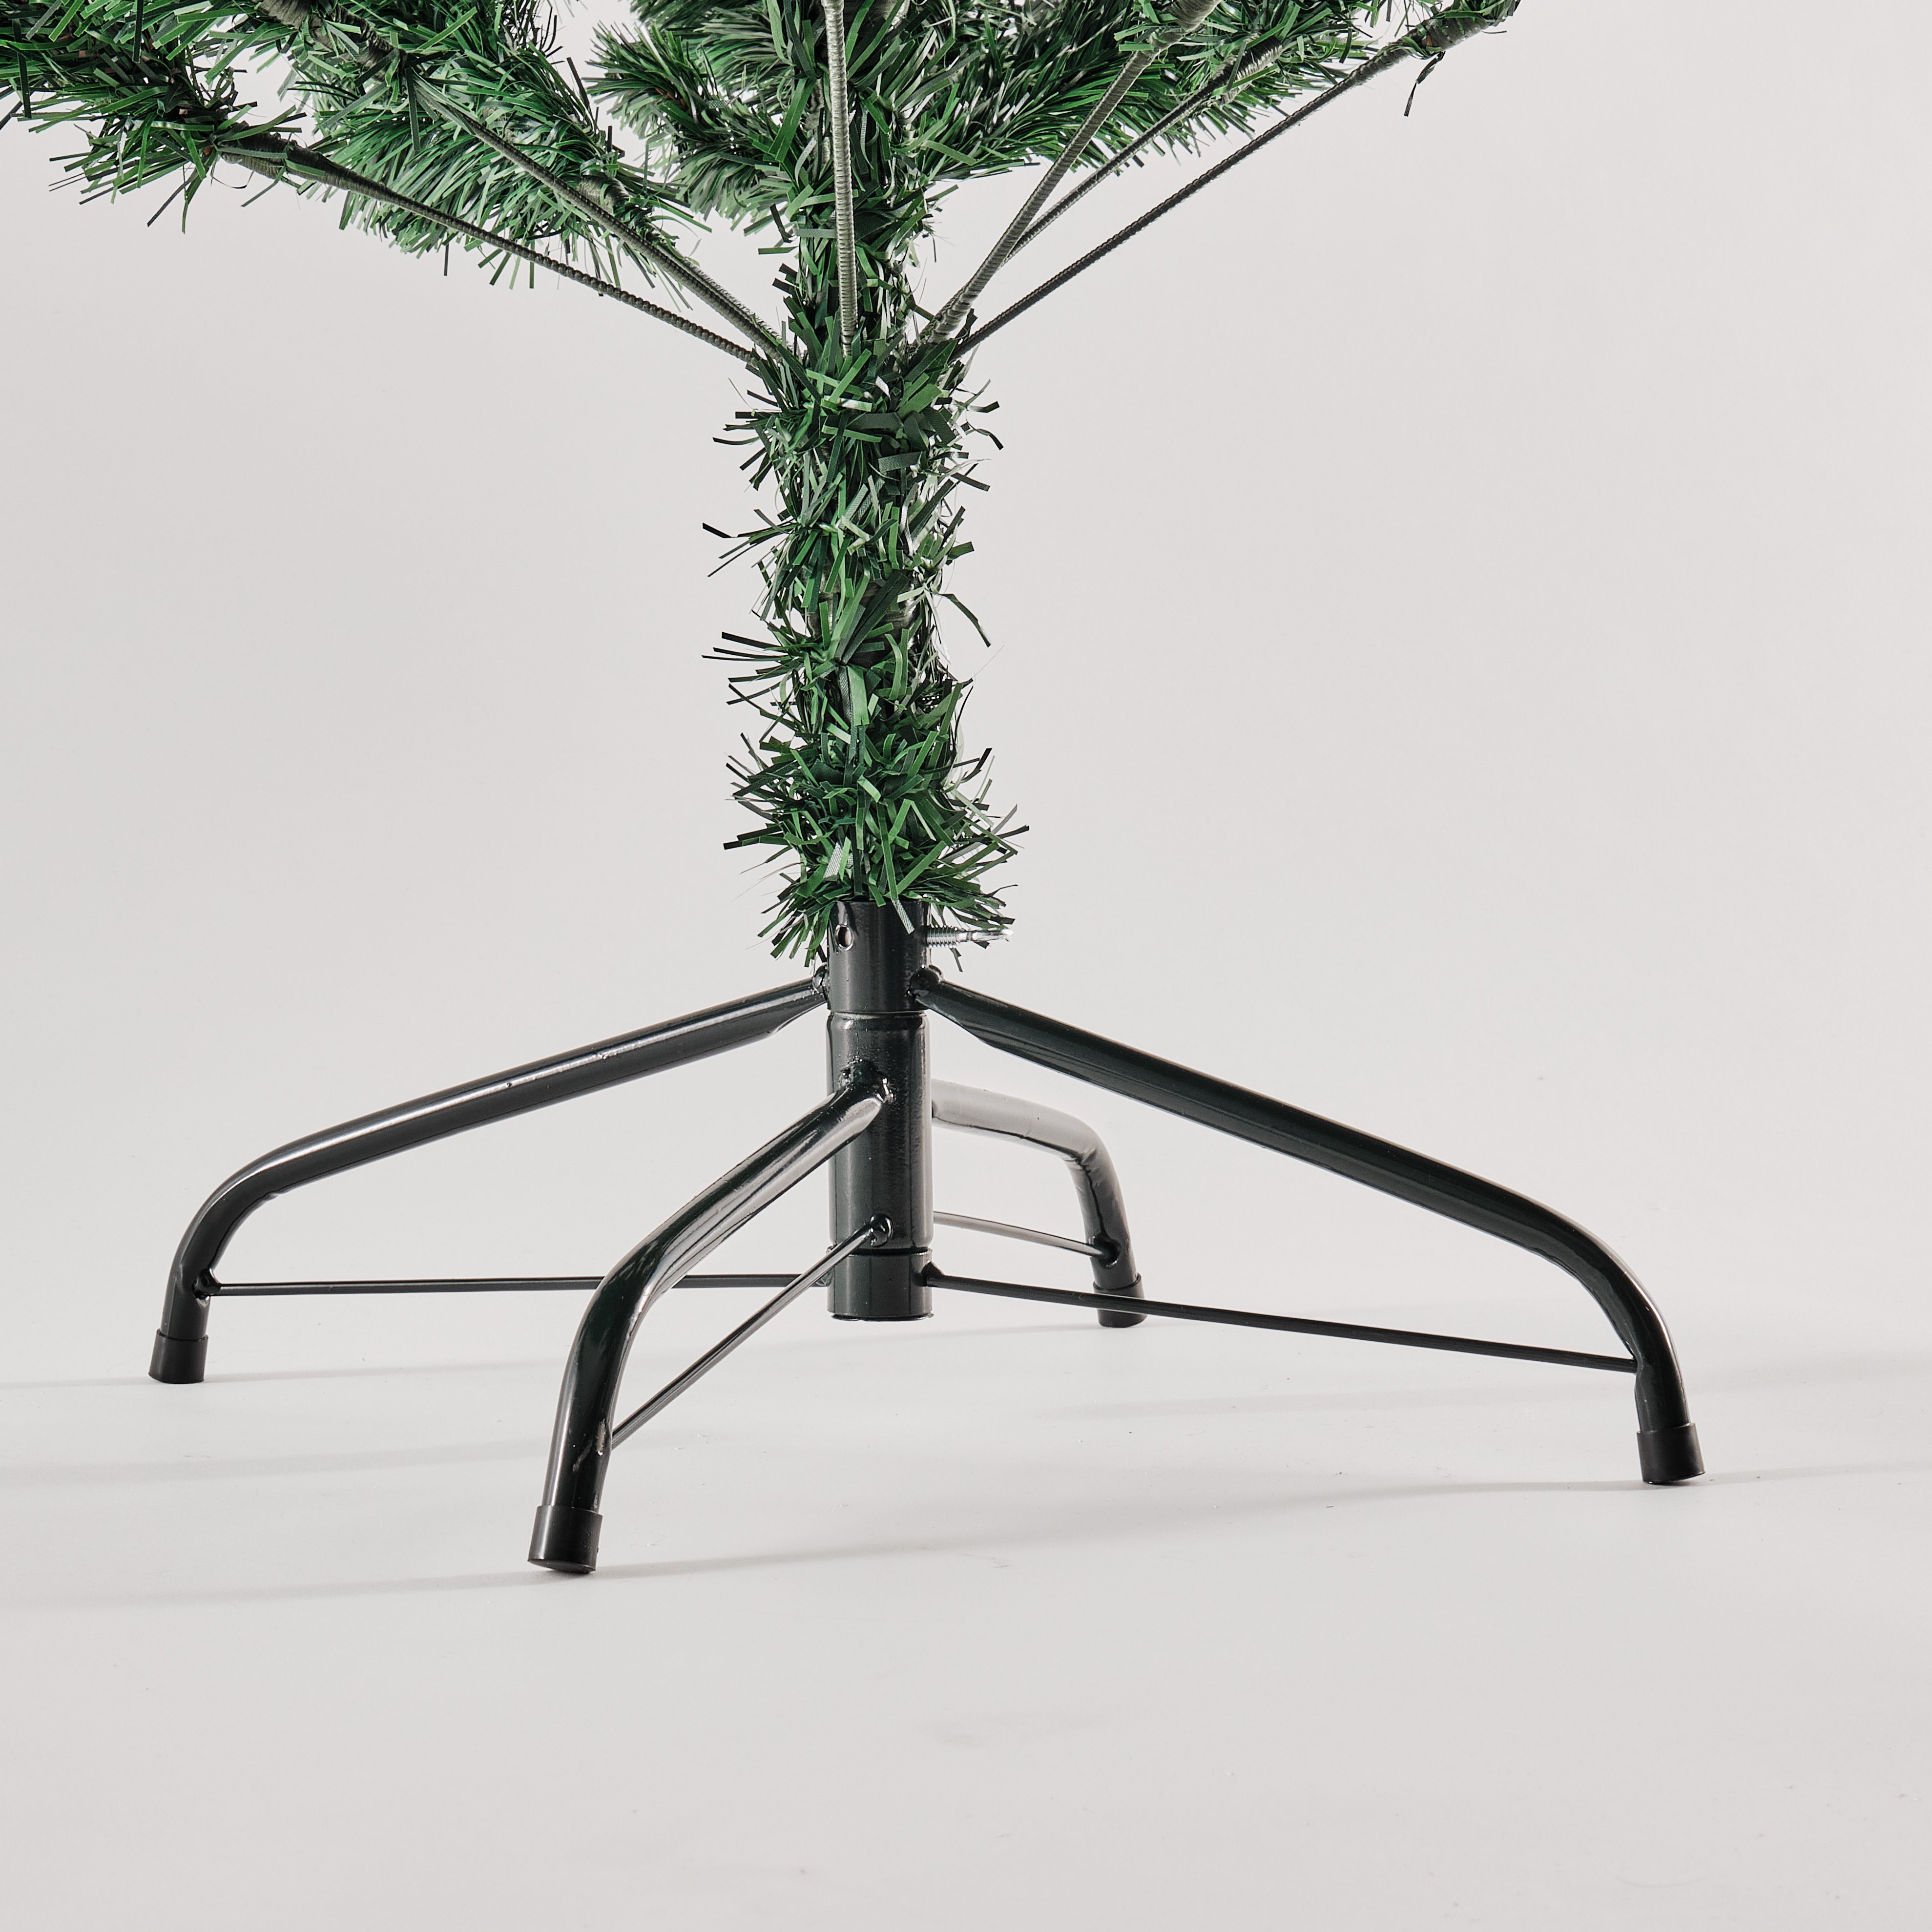 210 Zweige, Weihnachtsbaum Tannen, Beeren TOPCENT Weihnachtsbaum Künstlicher mit H cm 1072 und Künstlich, Künstlicher